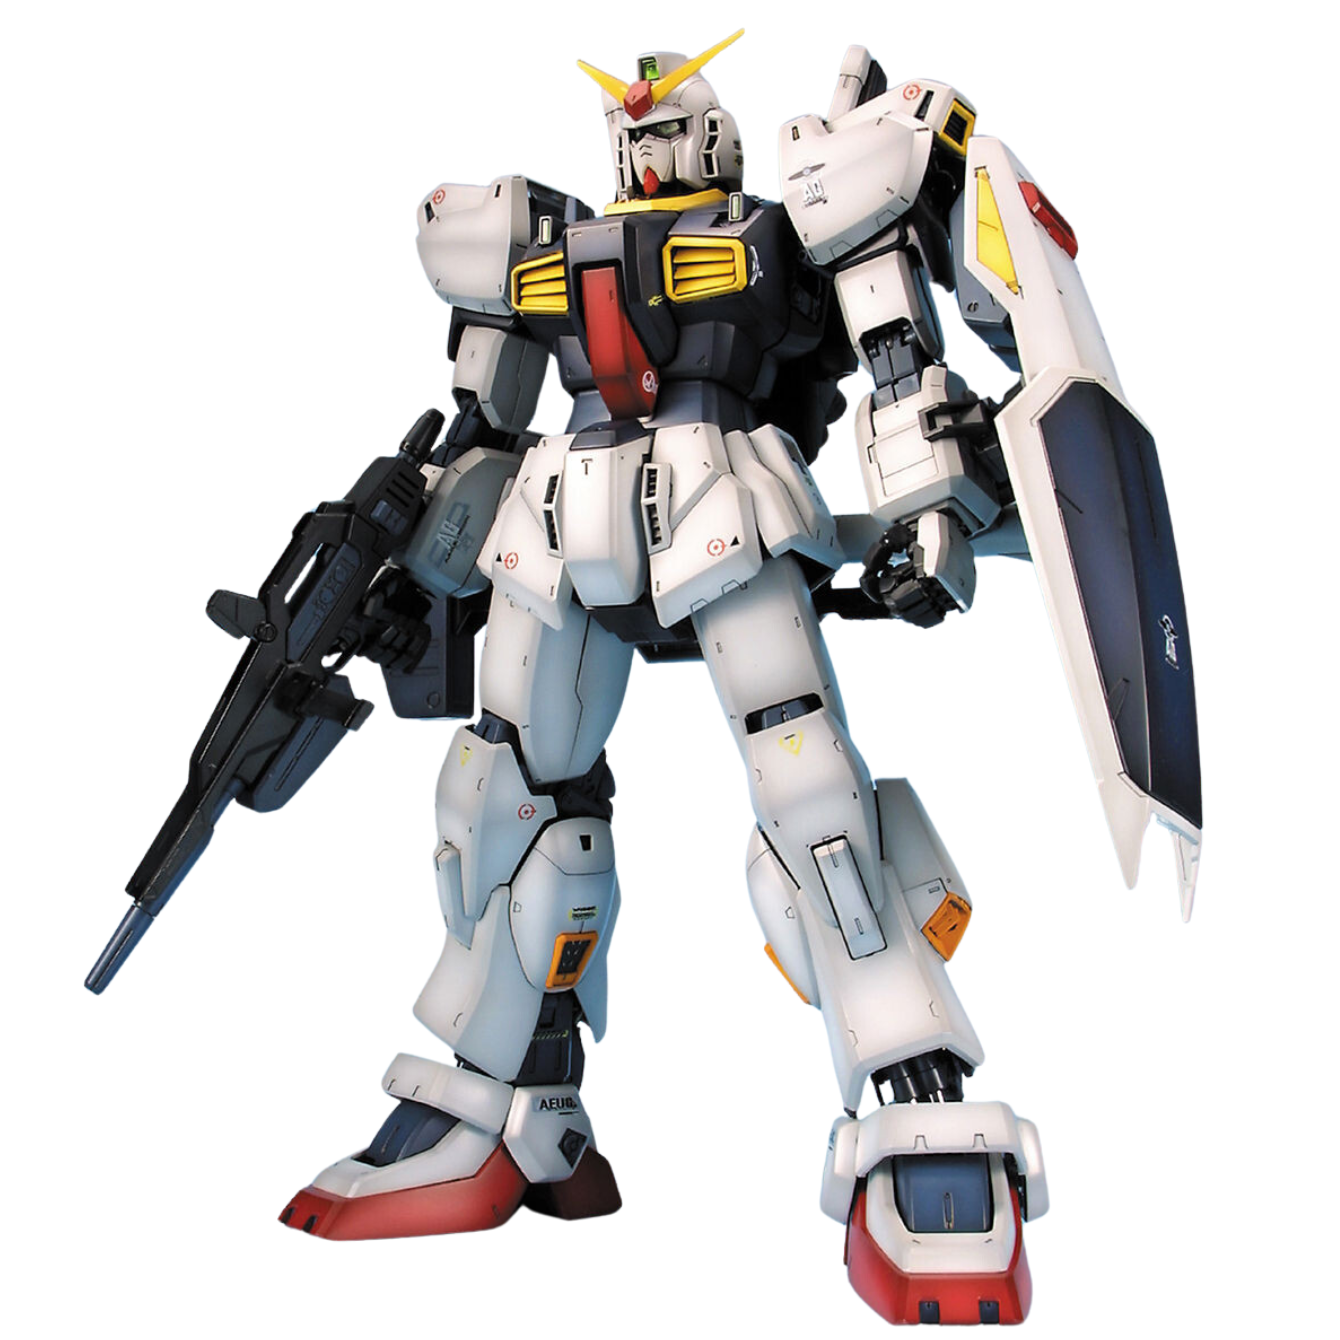 Mobile Suit Zeta Gundam - Gundam Mk-II AEUG PG 1/60 Model Kit (White Ver.)